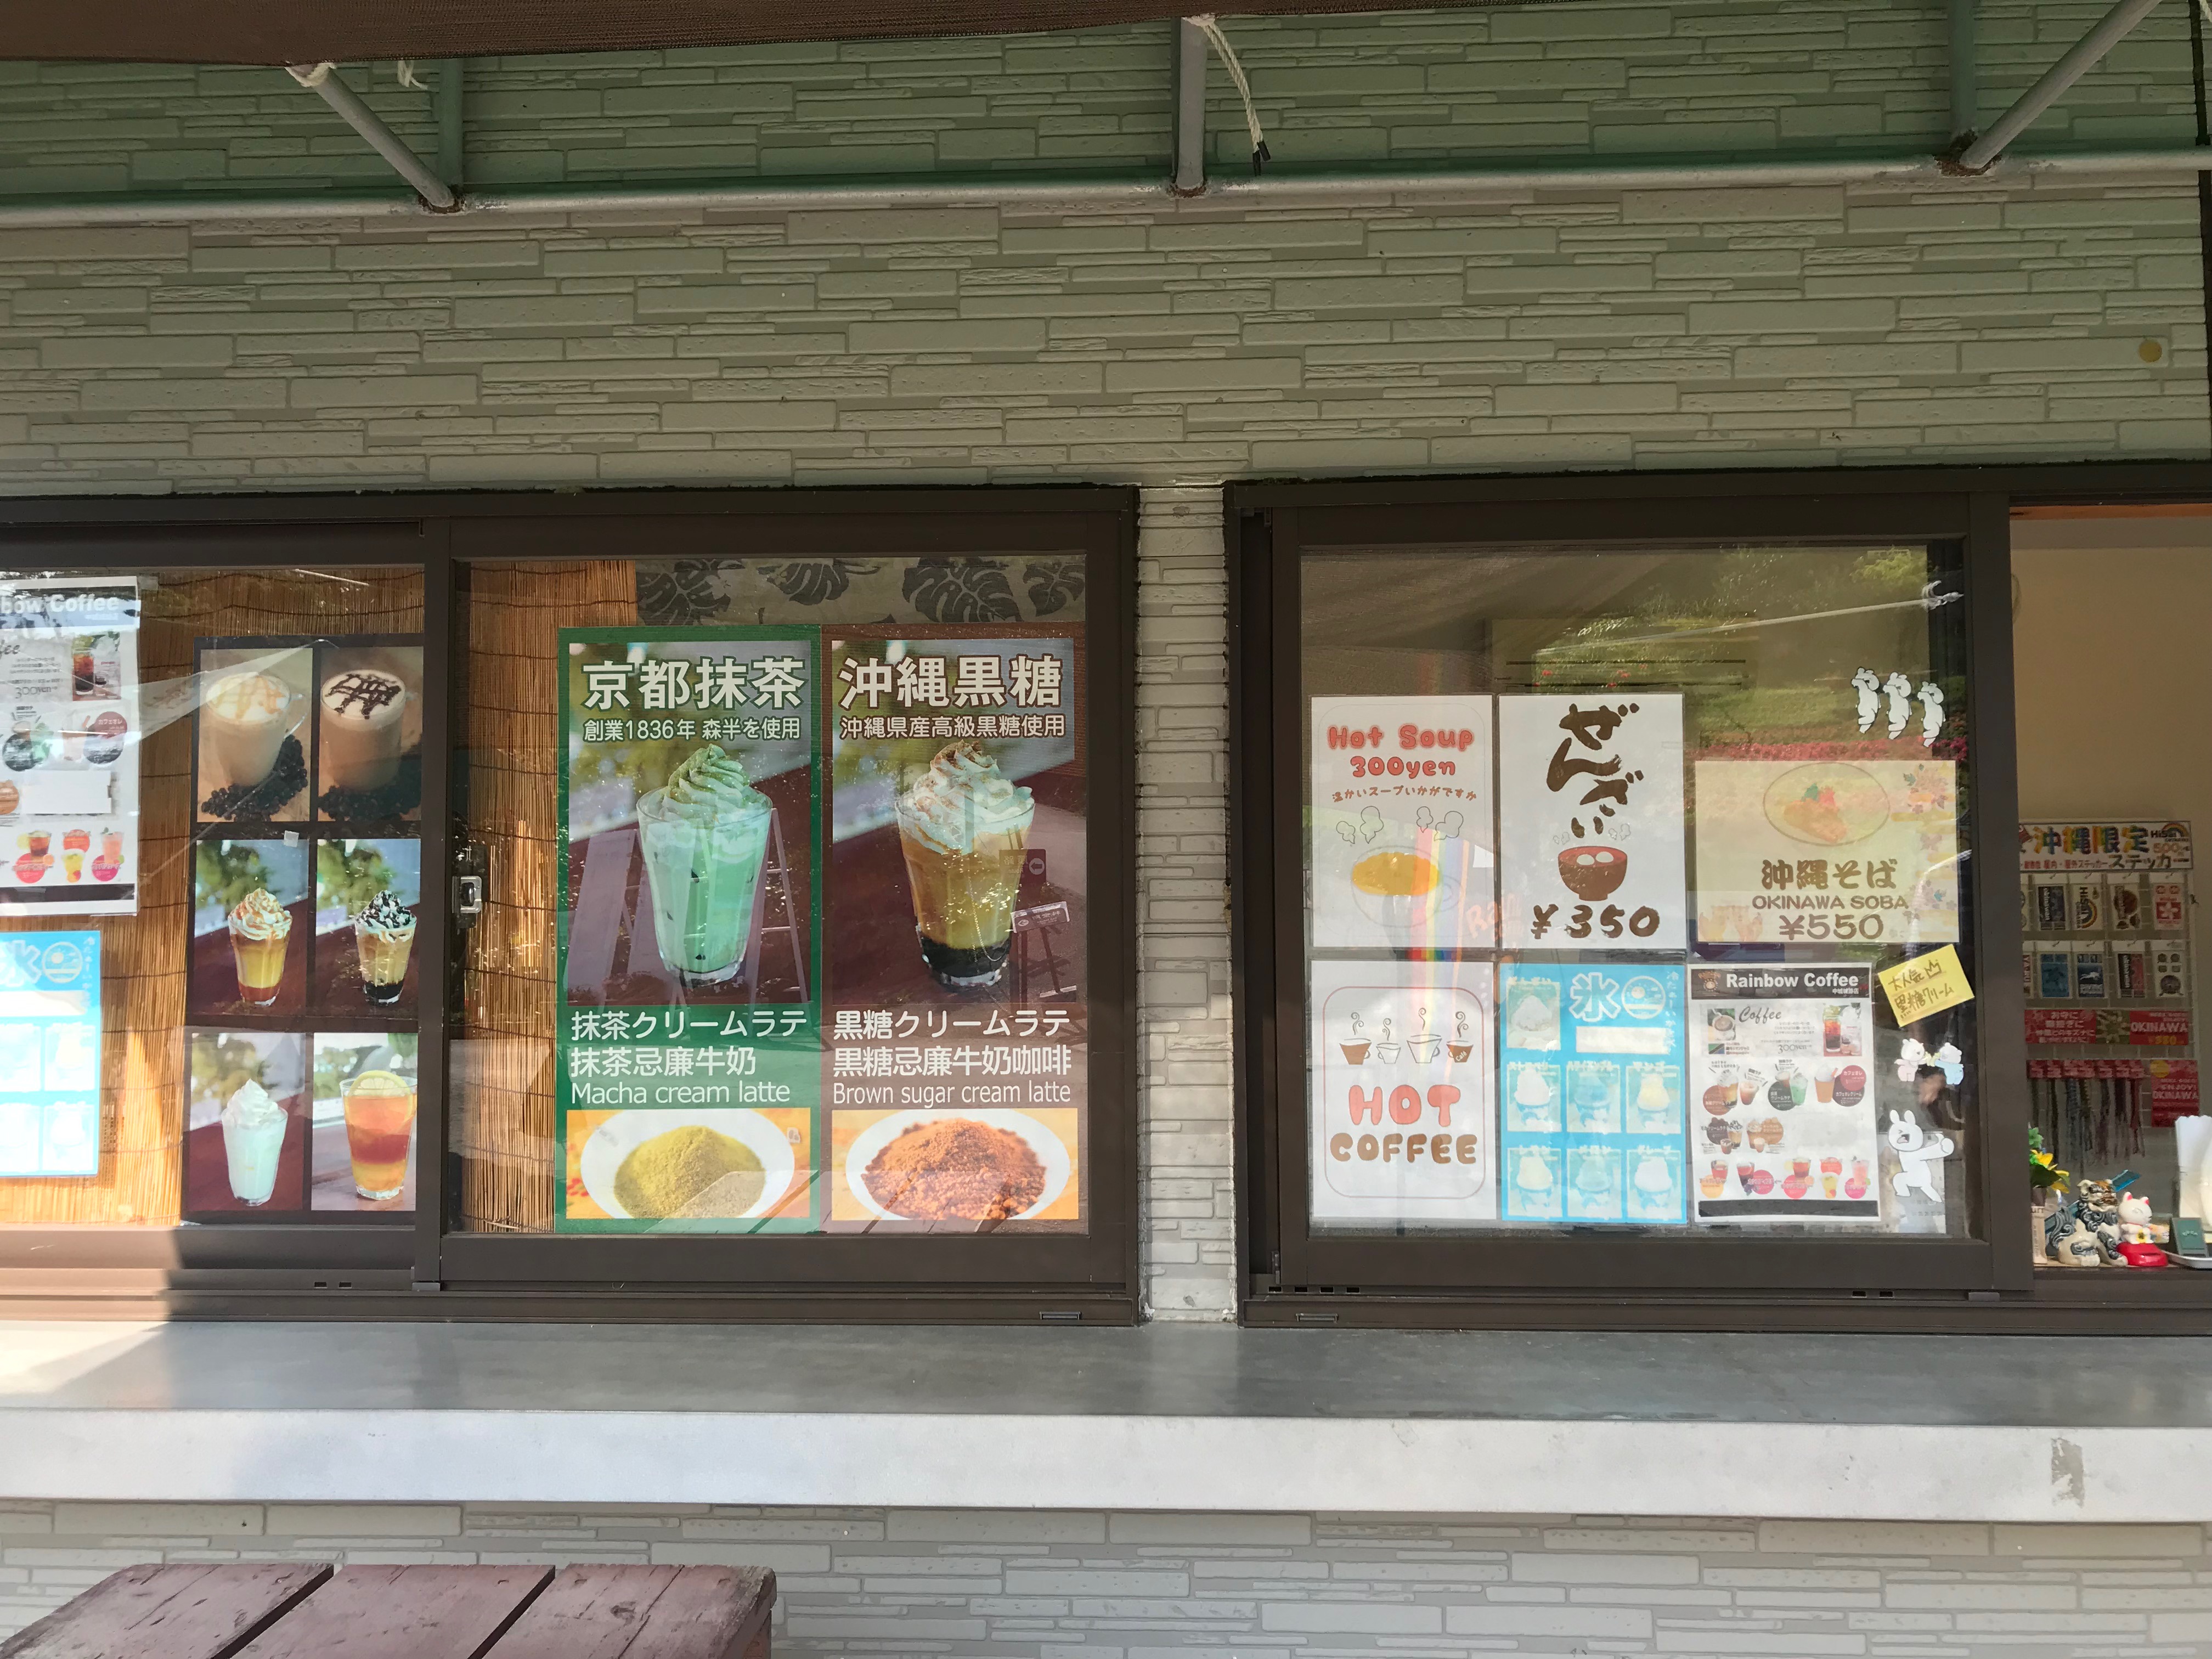 中城城跡入り口にある売店のアップ画像、メニューが見える写真